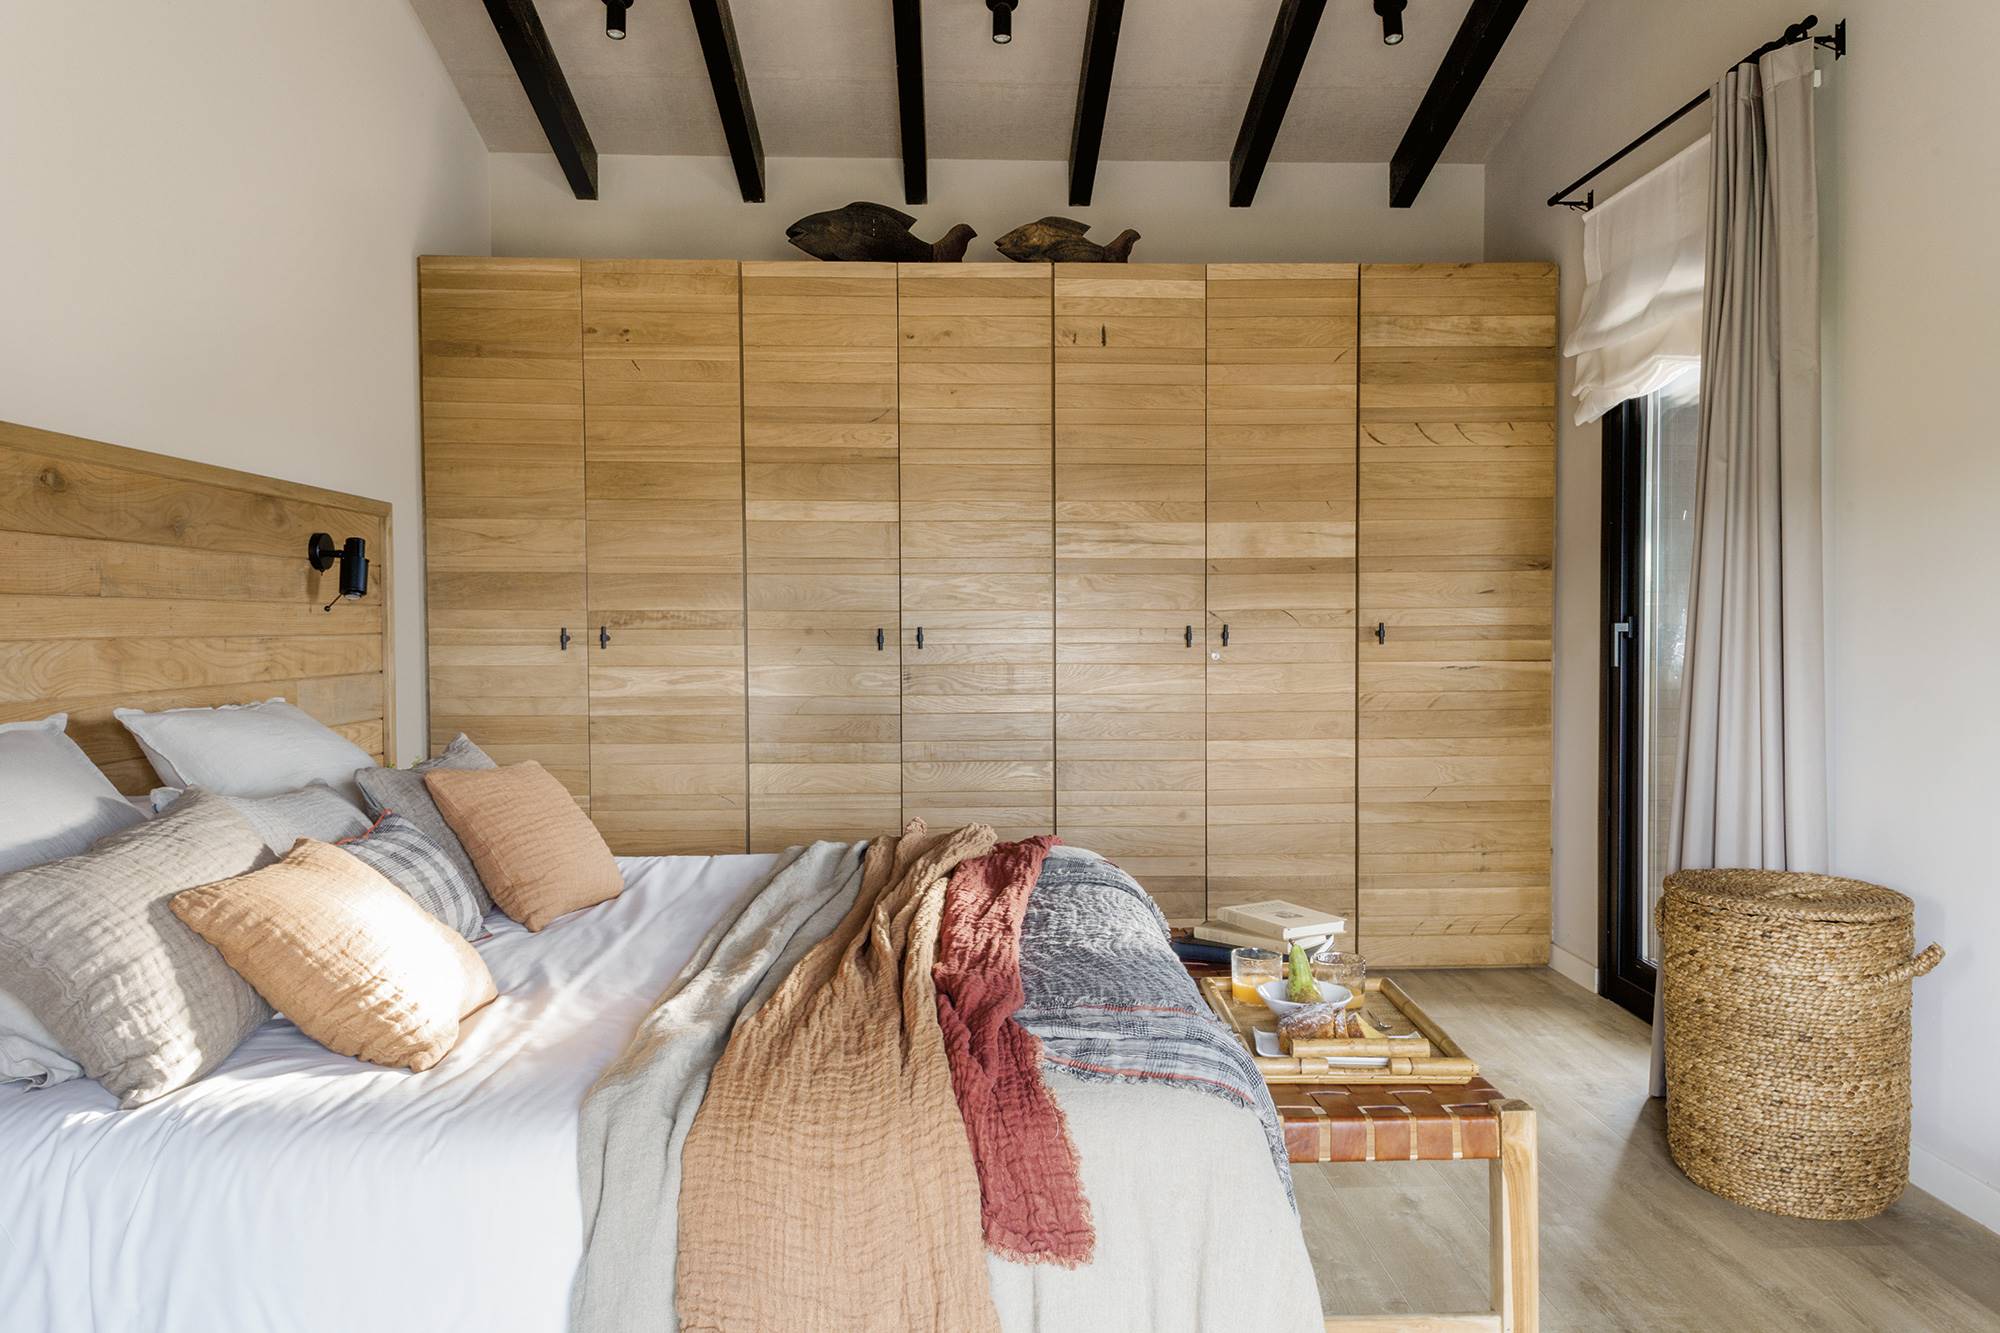 Dormitorio de estilo industrial en una cabaña de montaña, con armario y cabecero de madera, fibras naturales y cuero.